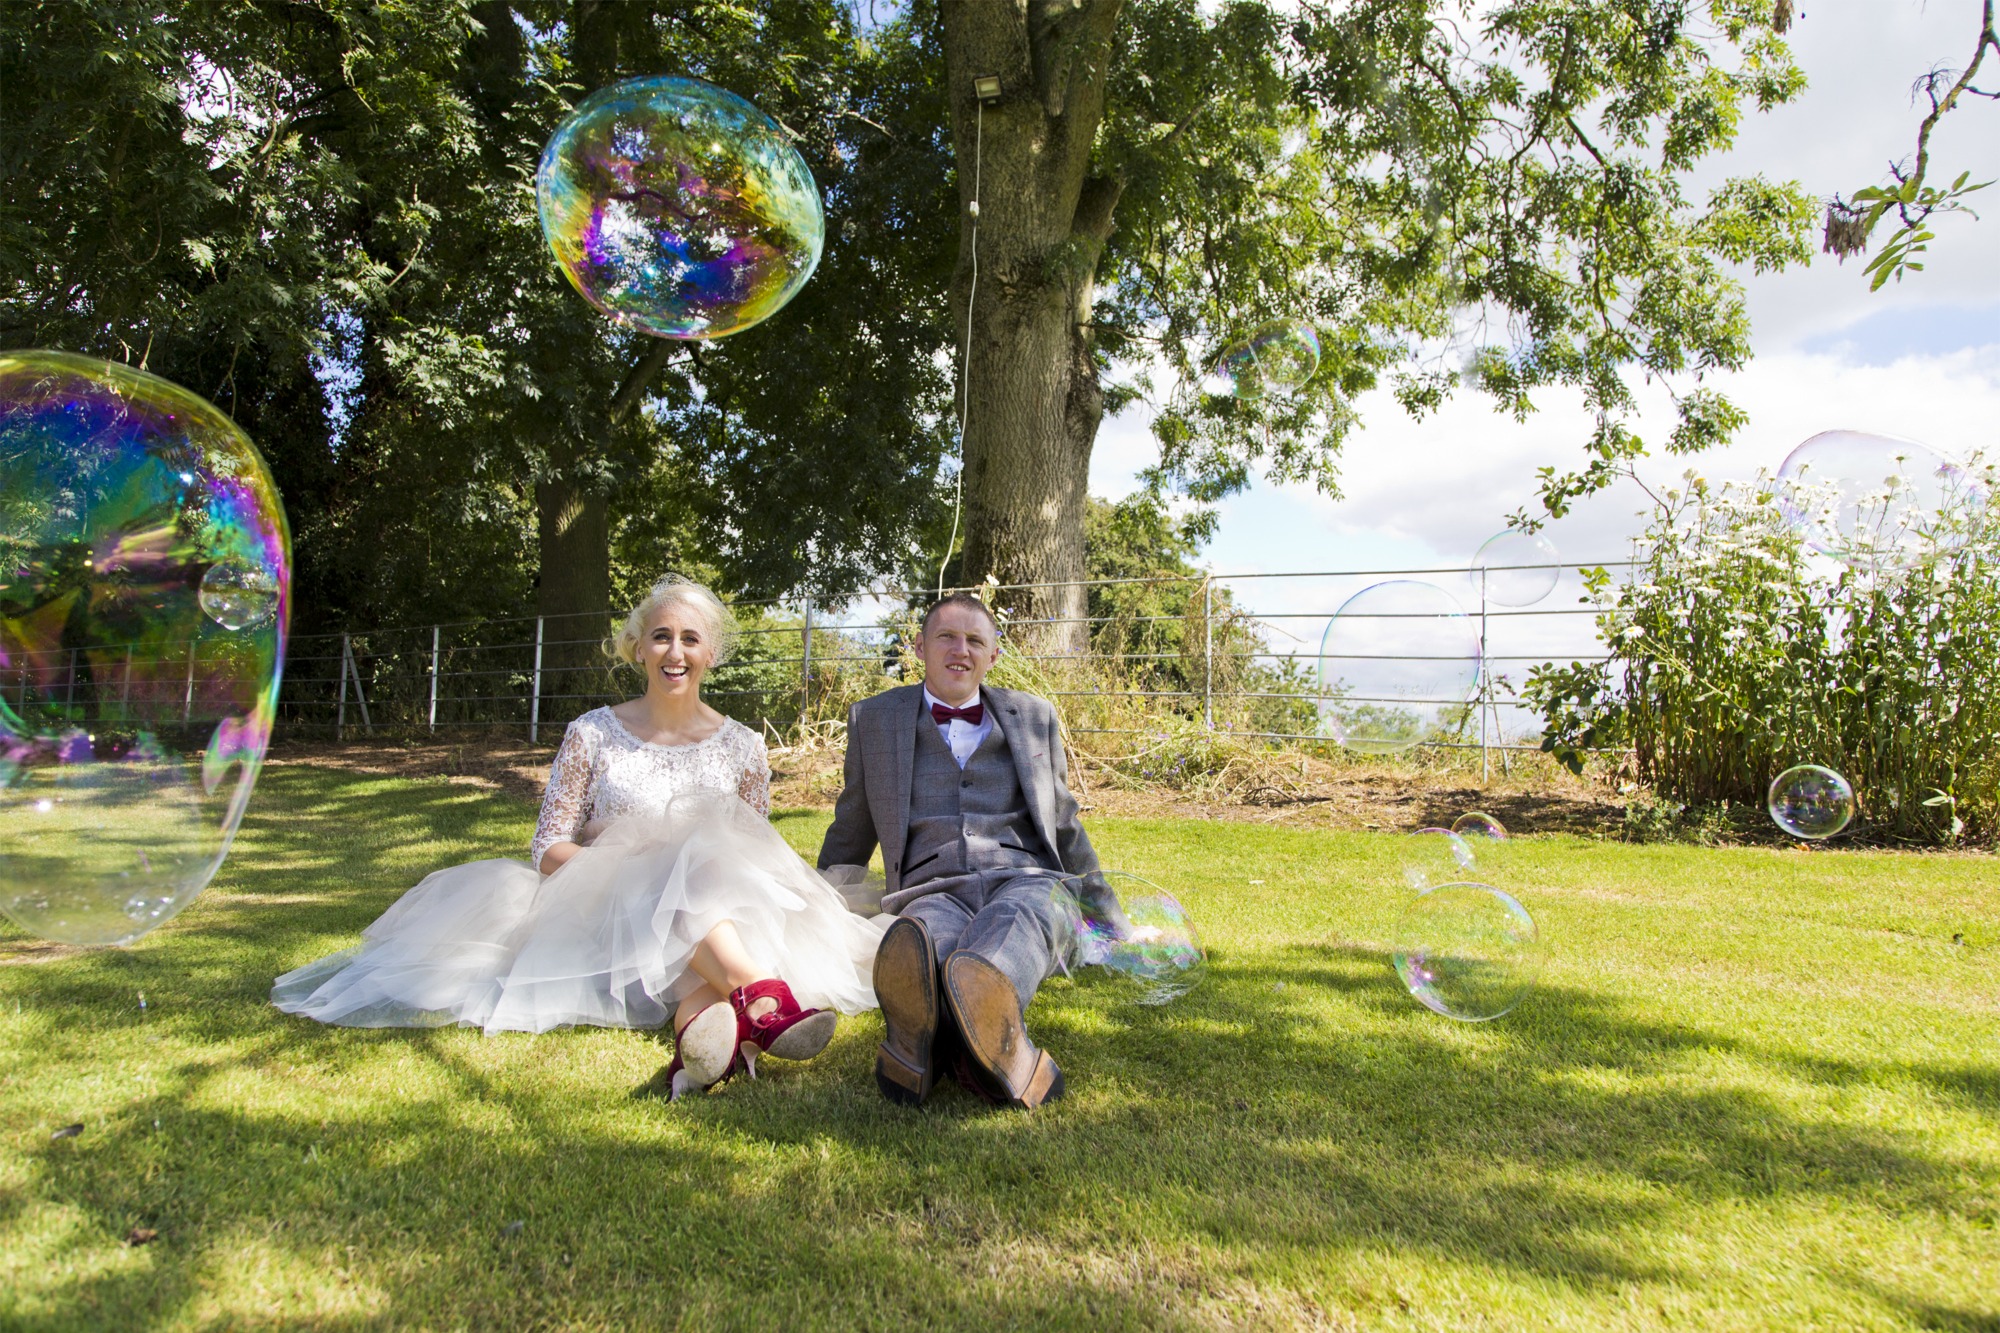 Wedding ceremony photographs by Wedding Photography Laois, Ireland